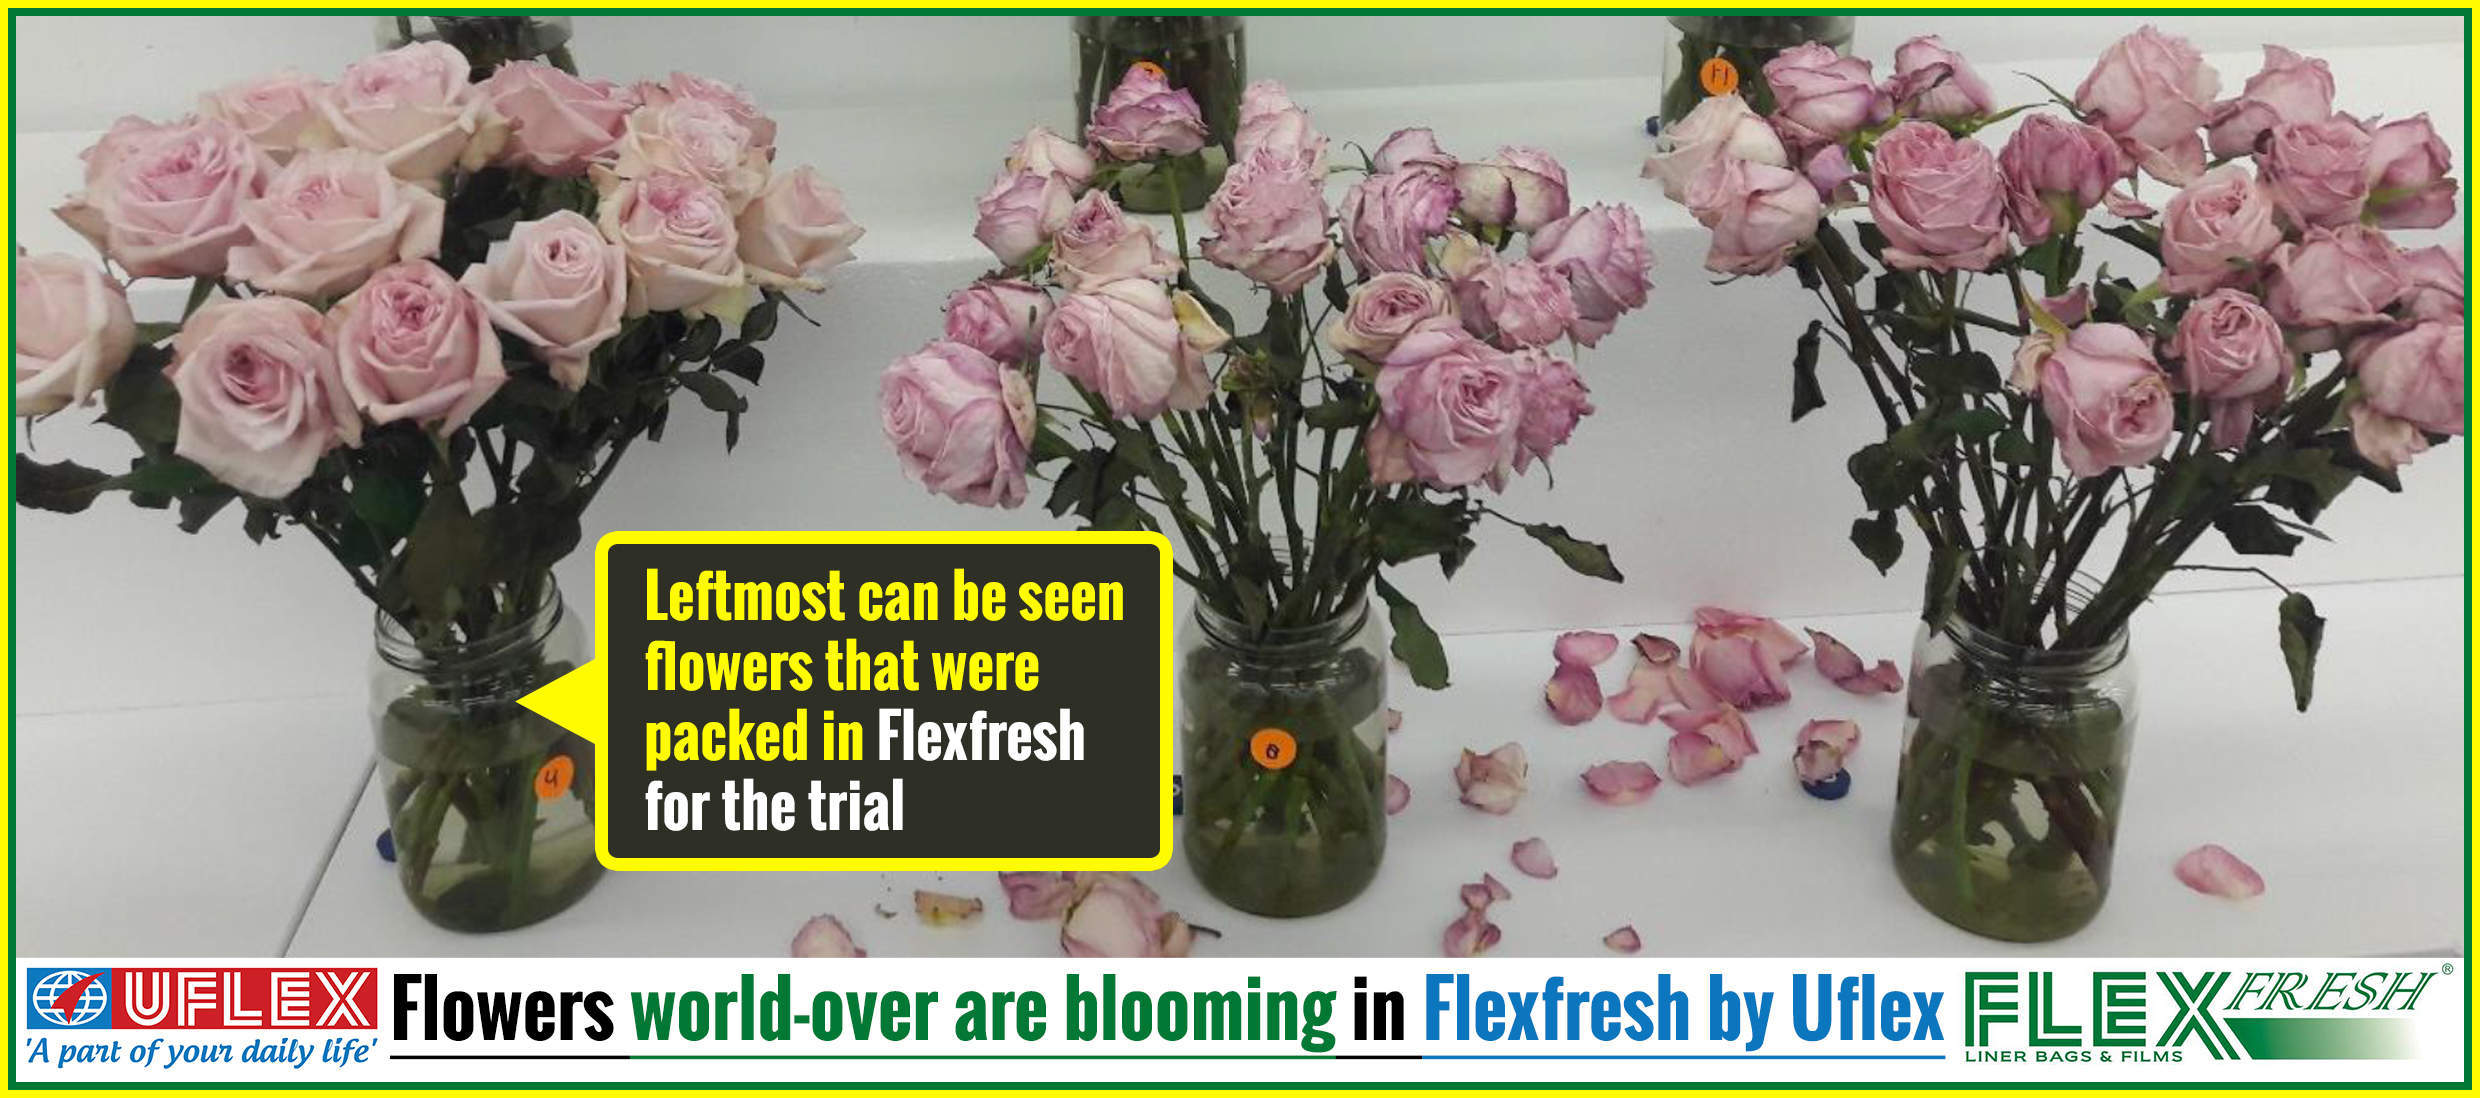 India’s Uflex develops Flexfresh film for flower companies